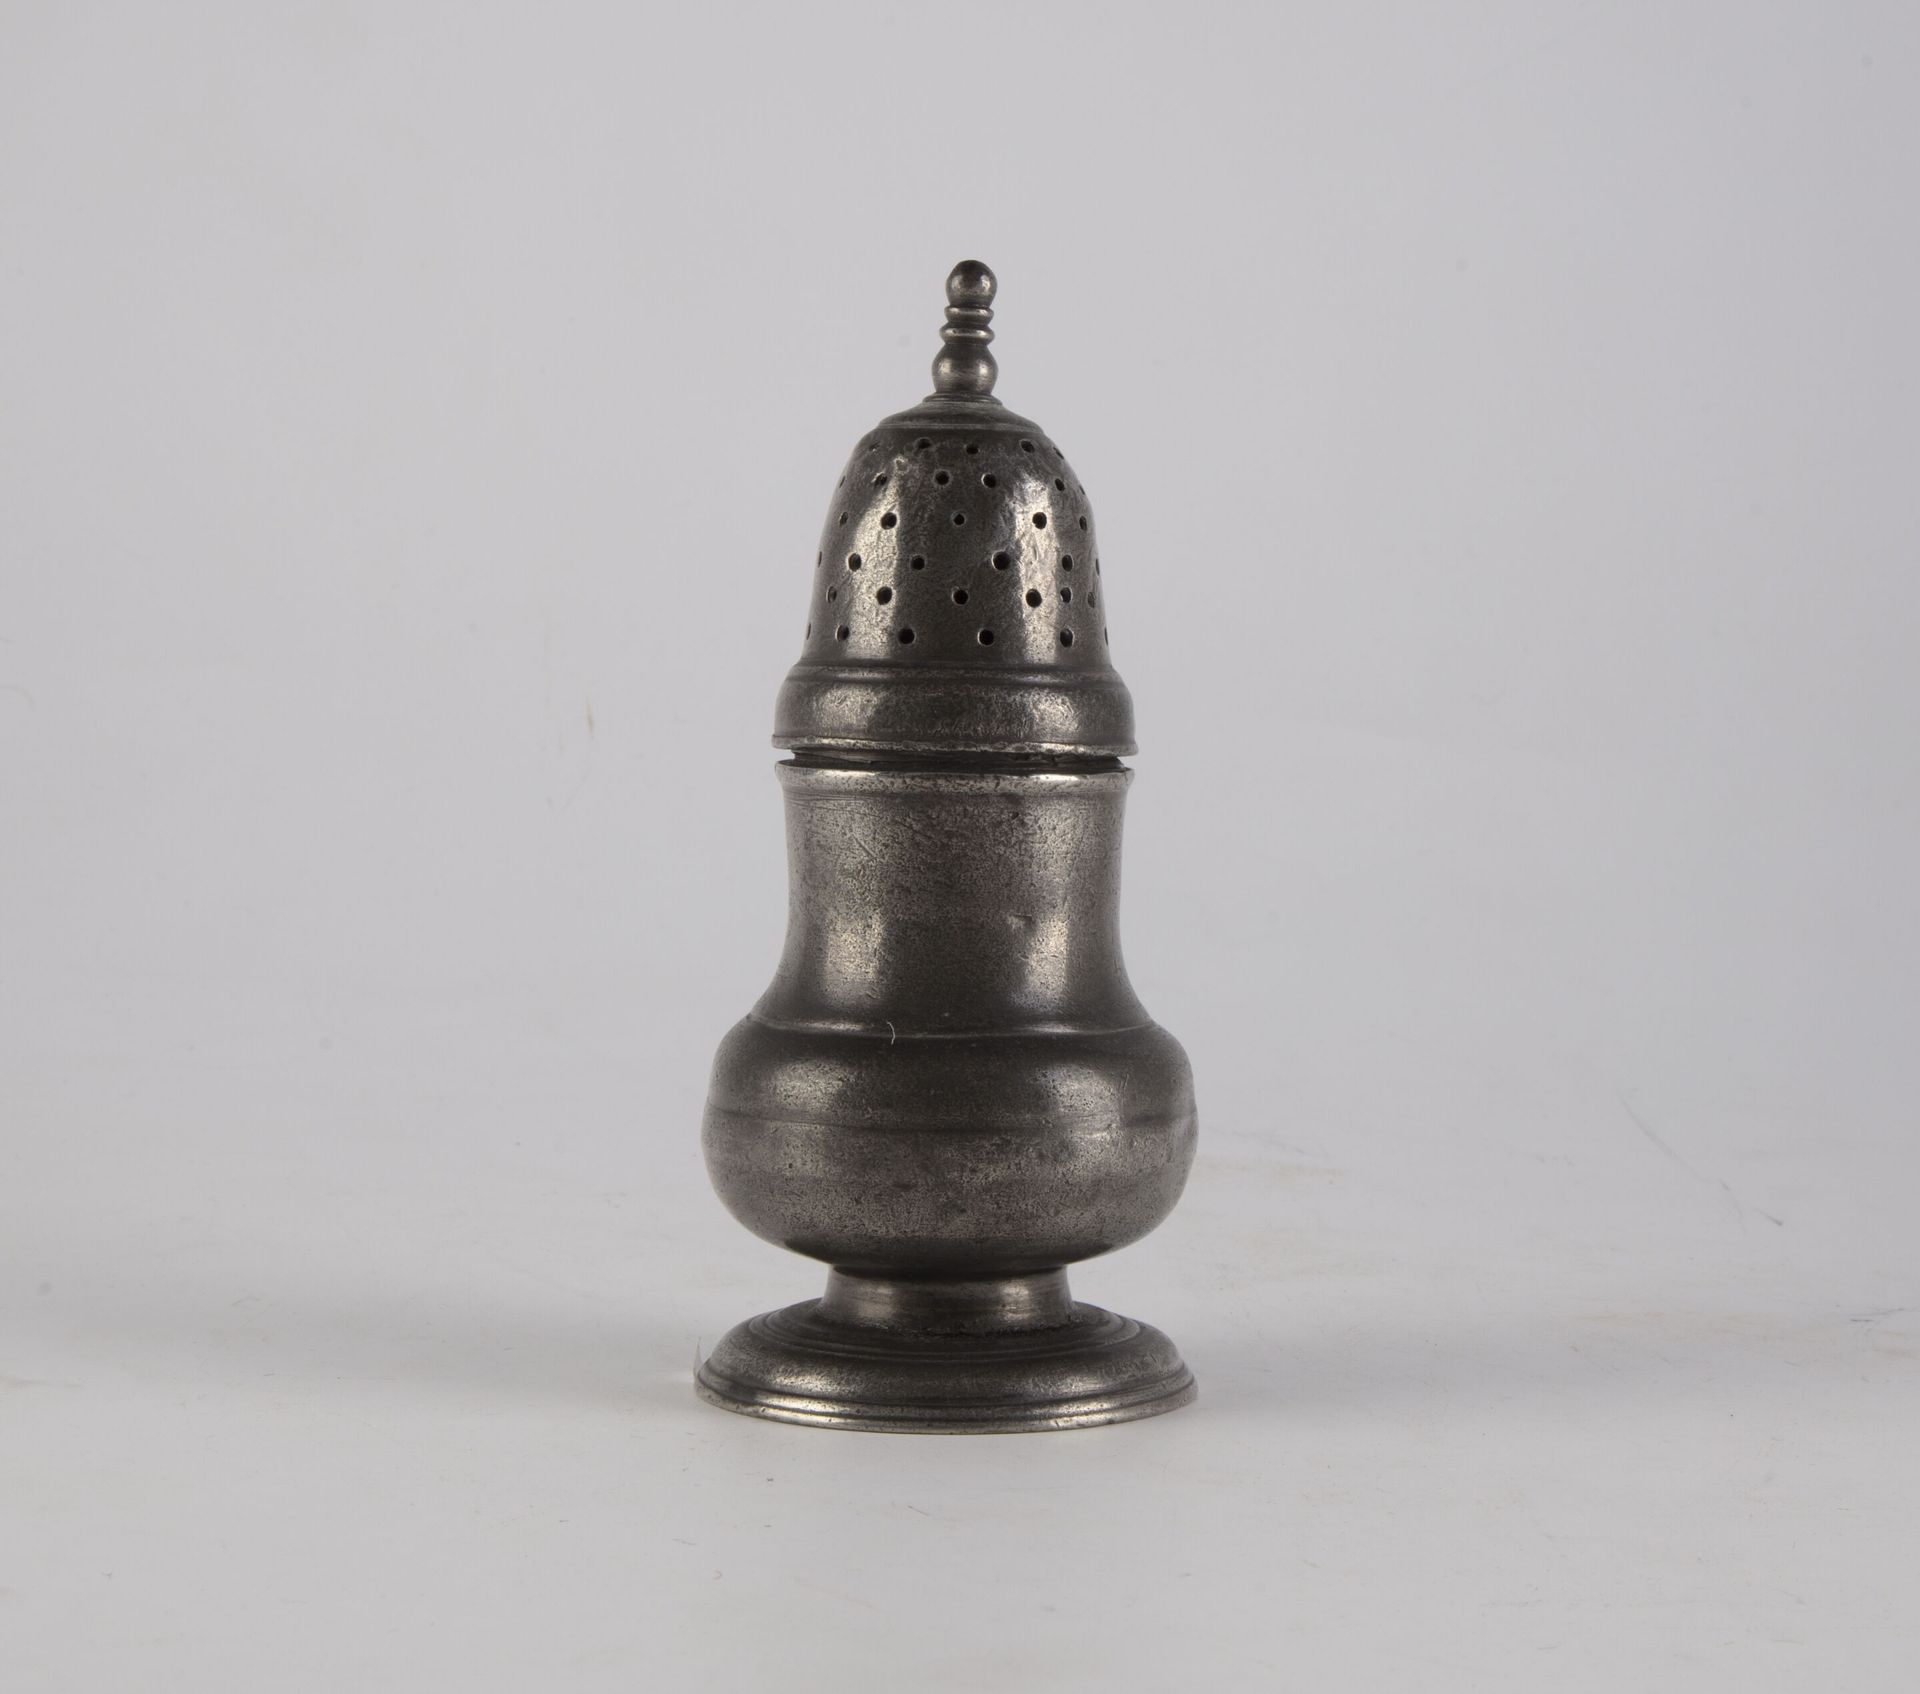 Null Spruzzatore in peltro a forma di balaustro 
XVIII secolo (?)
H. 15,5 cm